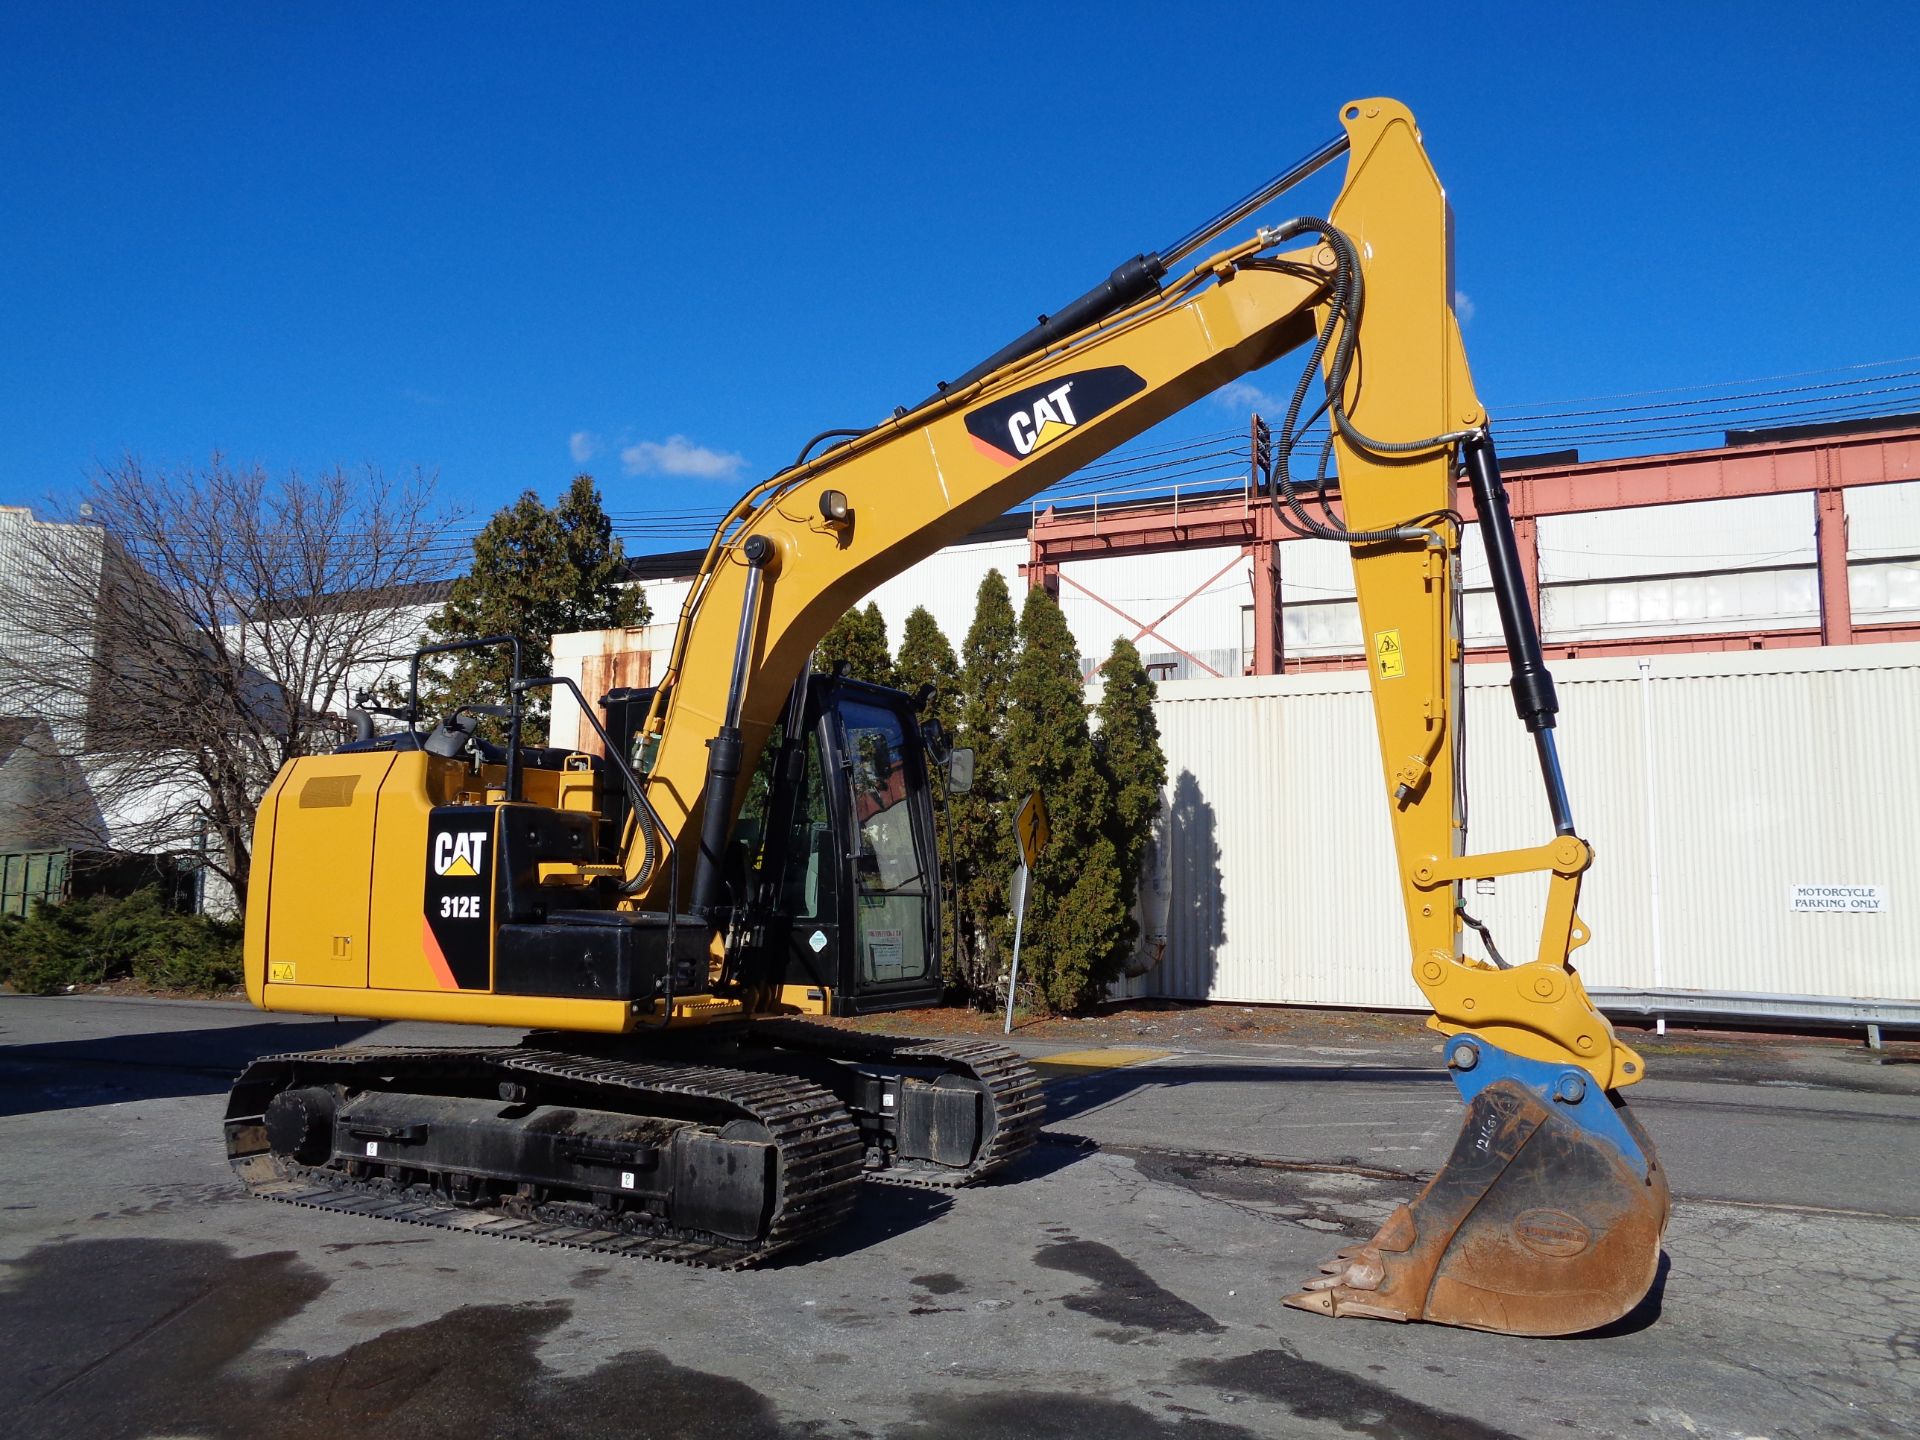 2015 Caterpillar 312E Excavator - Image 10 of 14